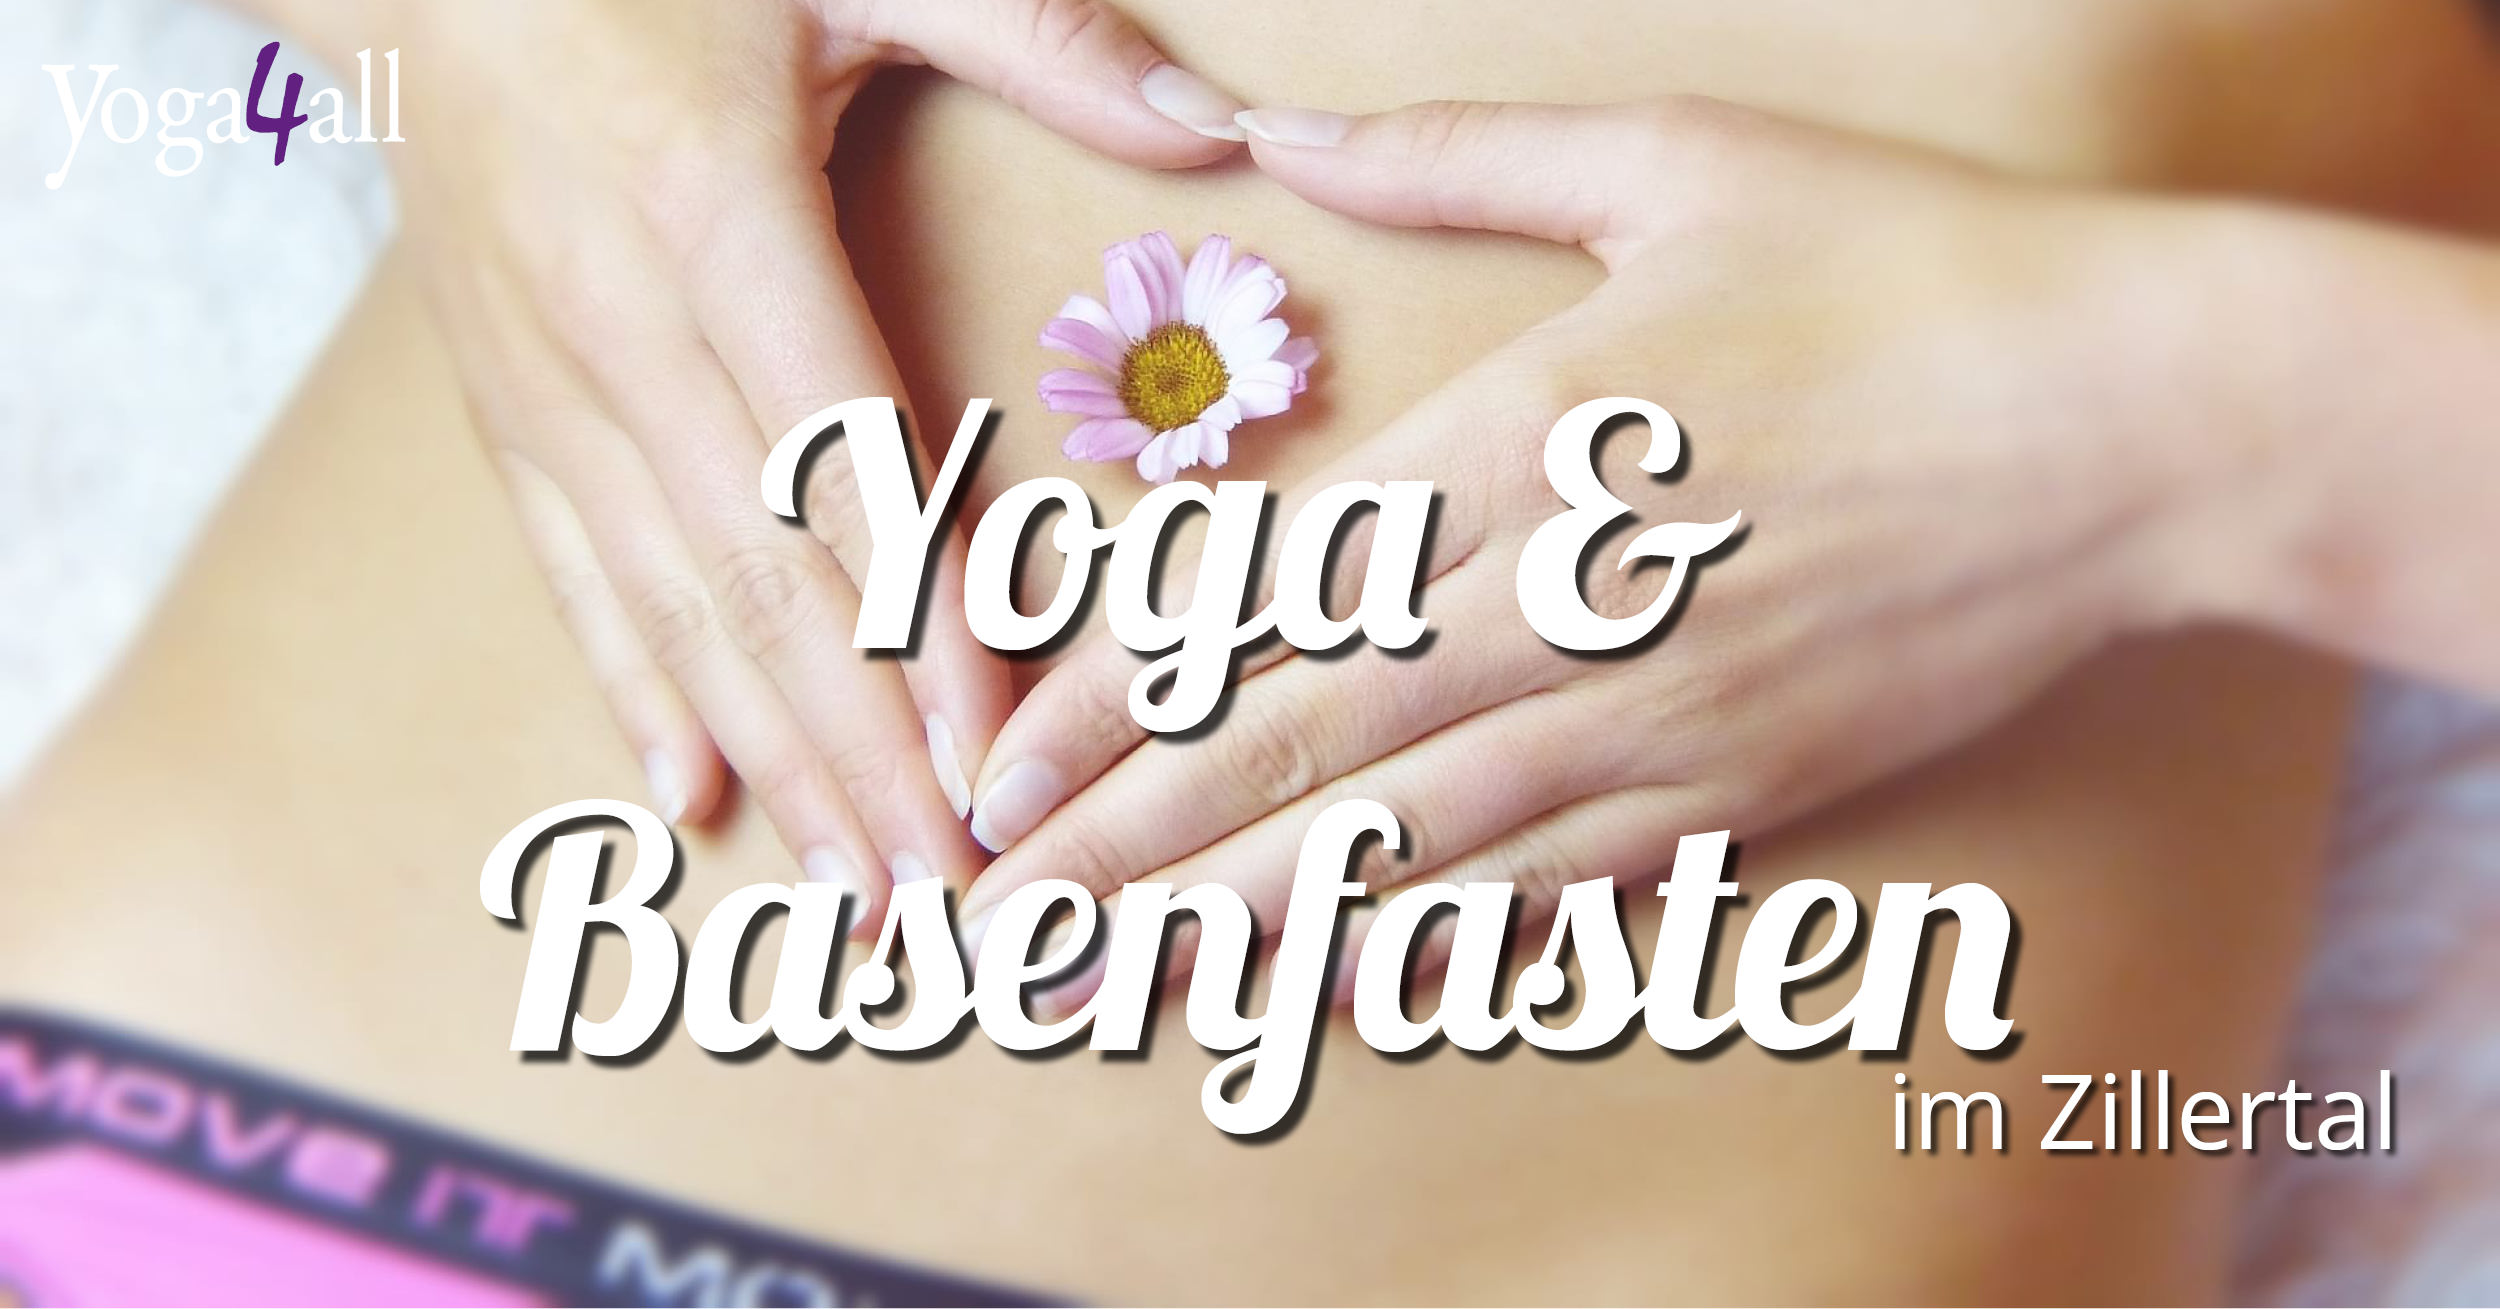 Y4A - Yoga und Basenfasten Zillertal